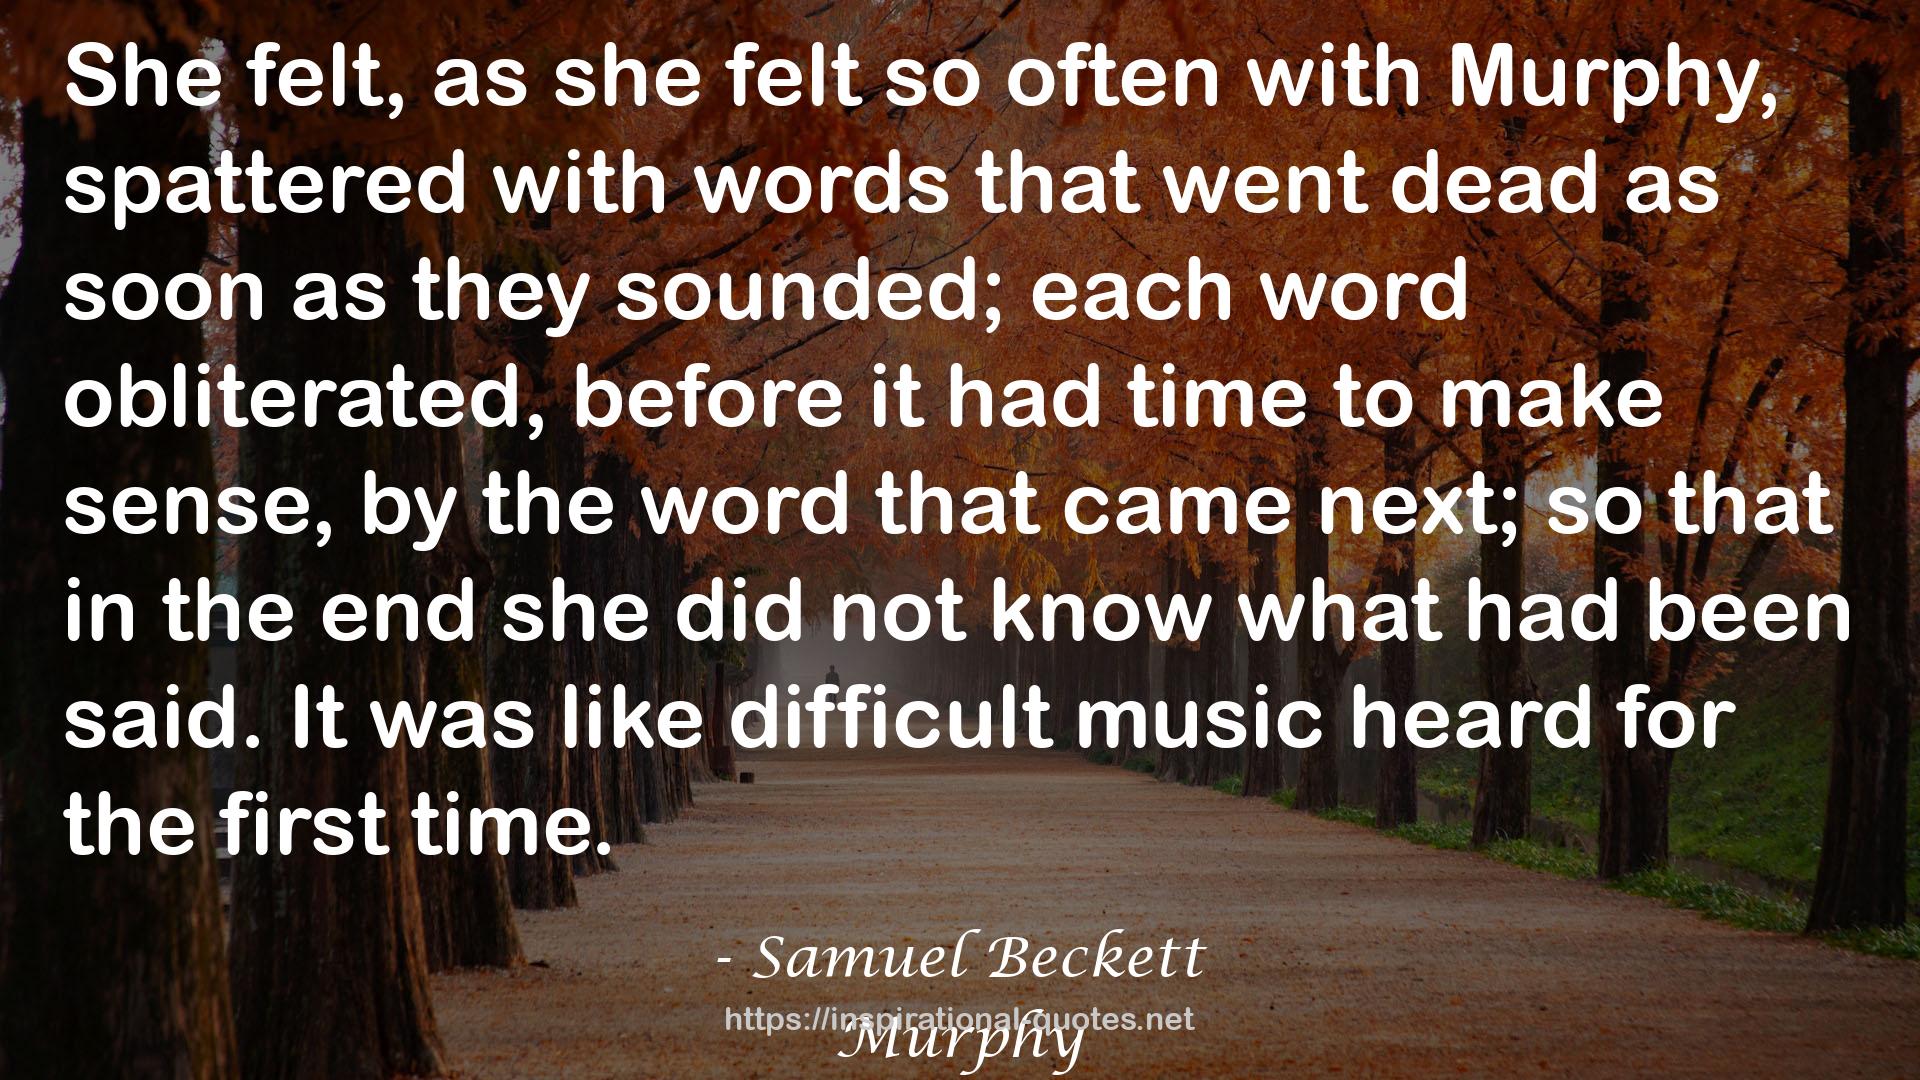 Samuel Beckett QUOTES